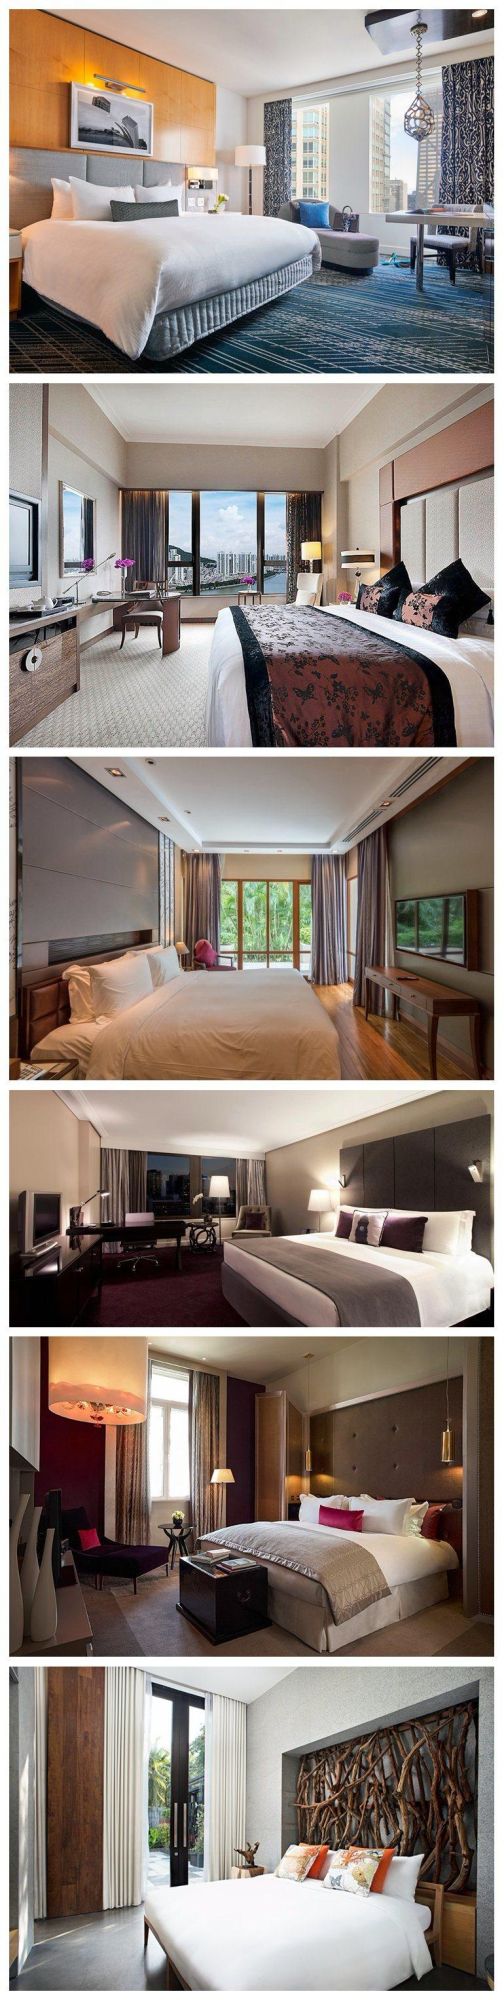 Modern Design Hotel Bedroom Furniture for 4-5 Stars Business Hotel